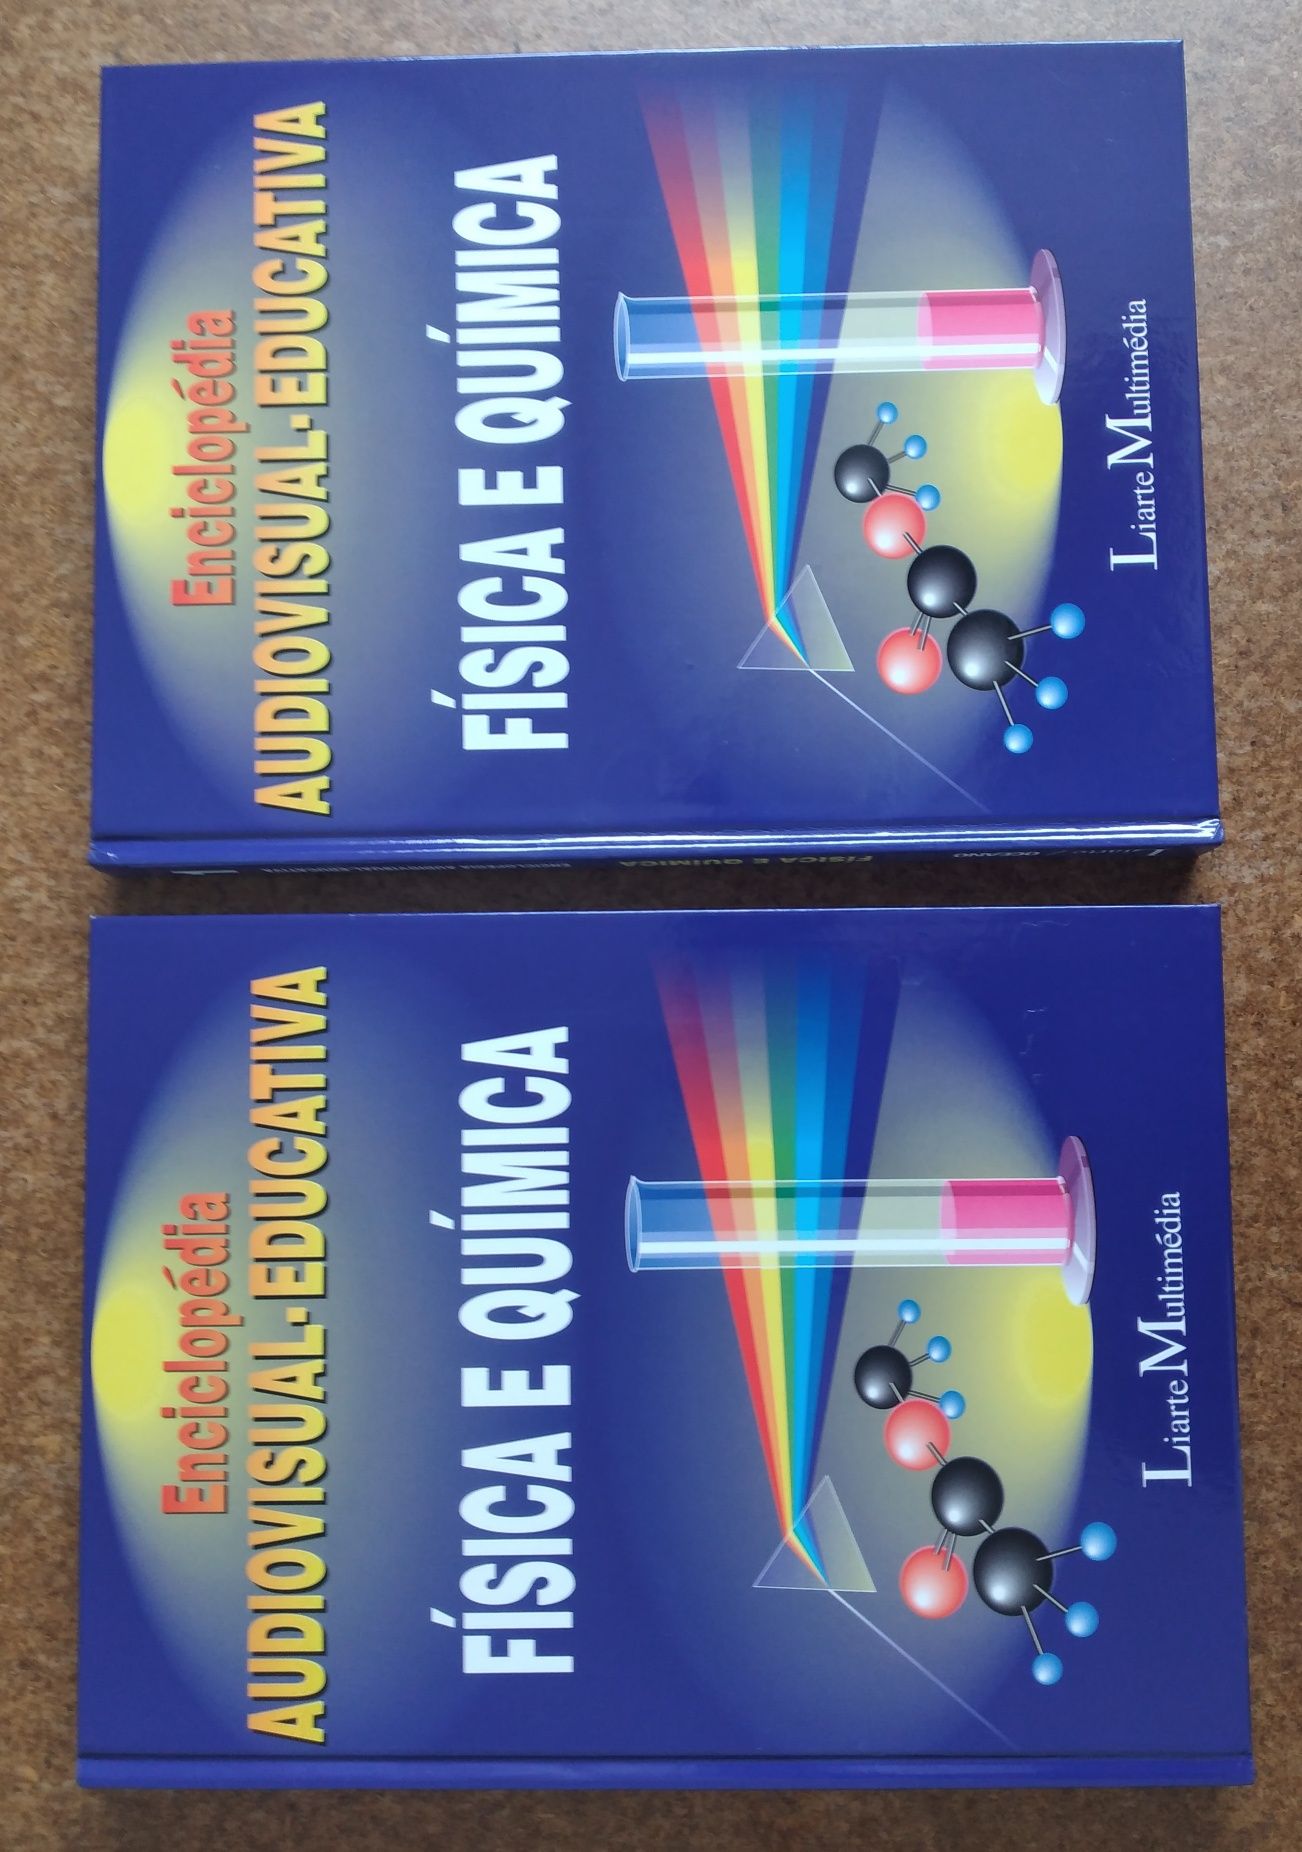 Física e Química - 2 livros novos